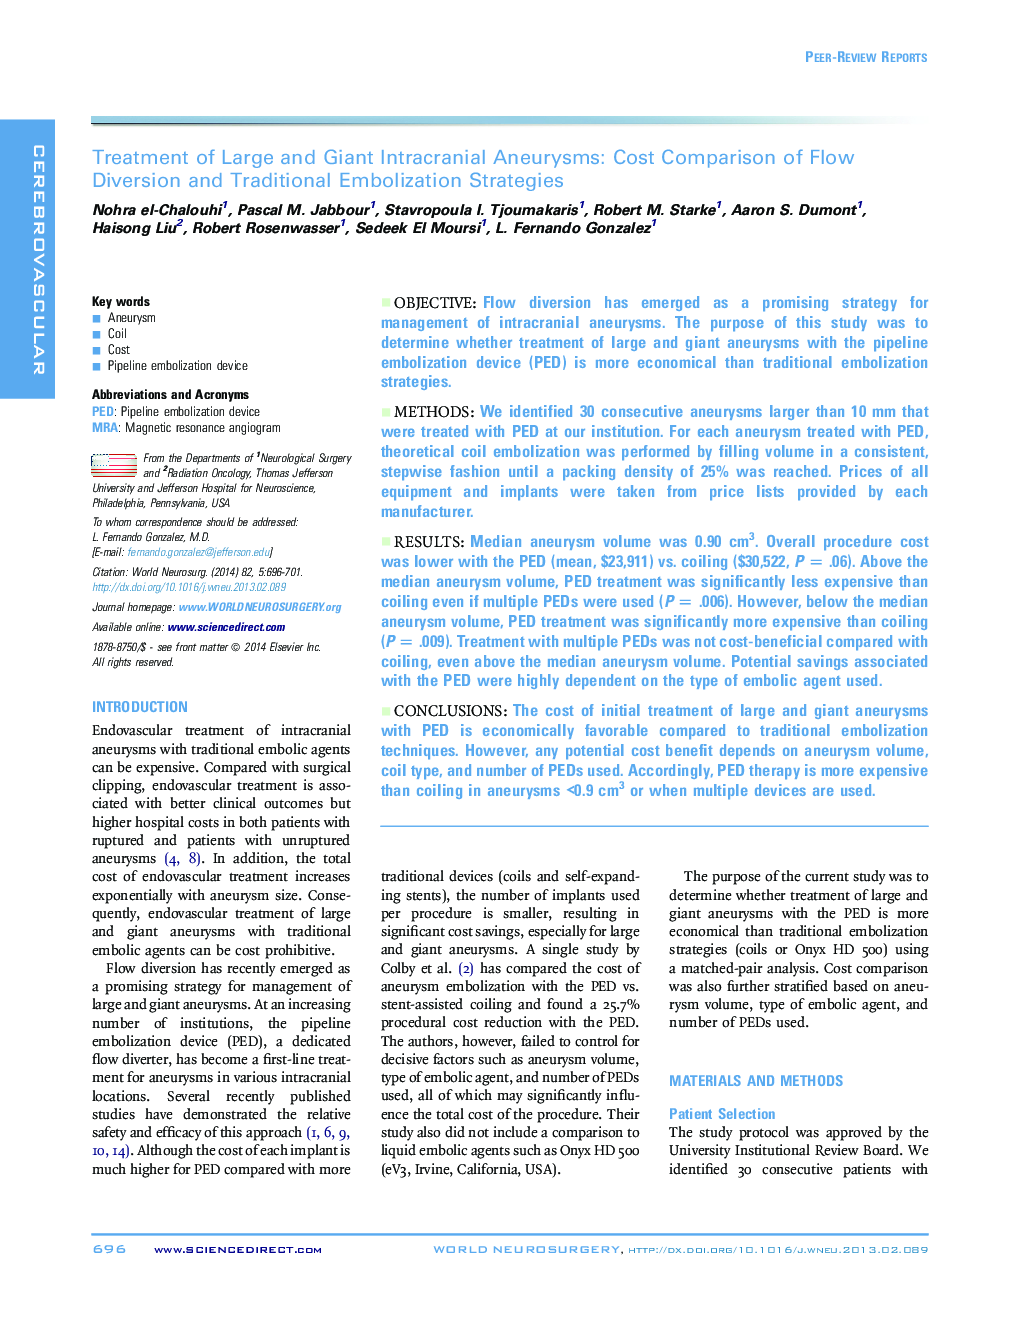 درمان عوارض درونی جمعی بزرگ و غول پیکر: مقایسهای با هزینه انحراف جریان و راهبردهای امبولانس سنتی 